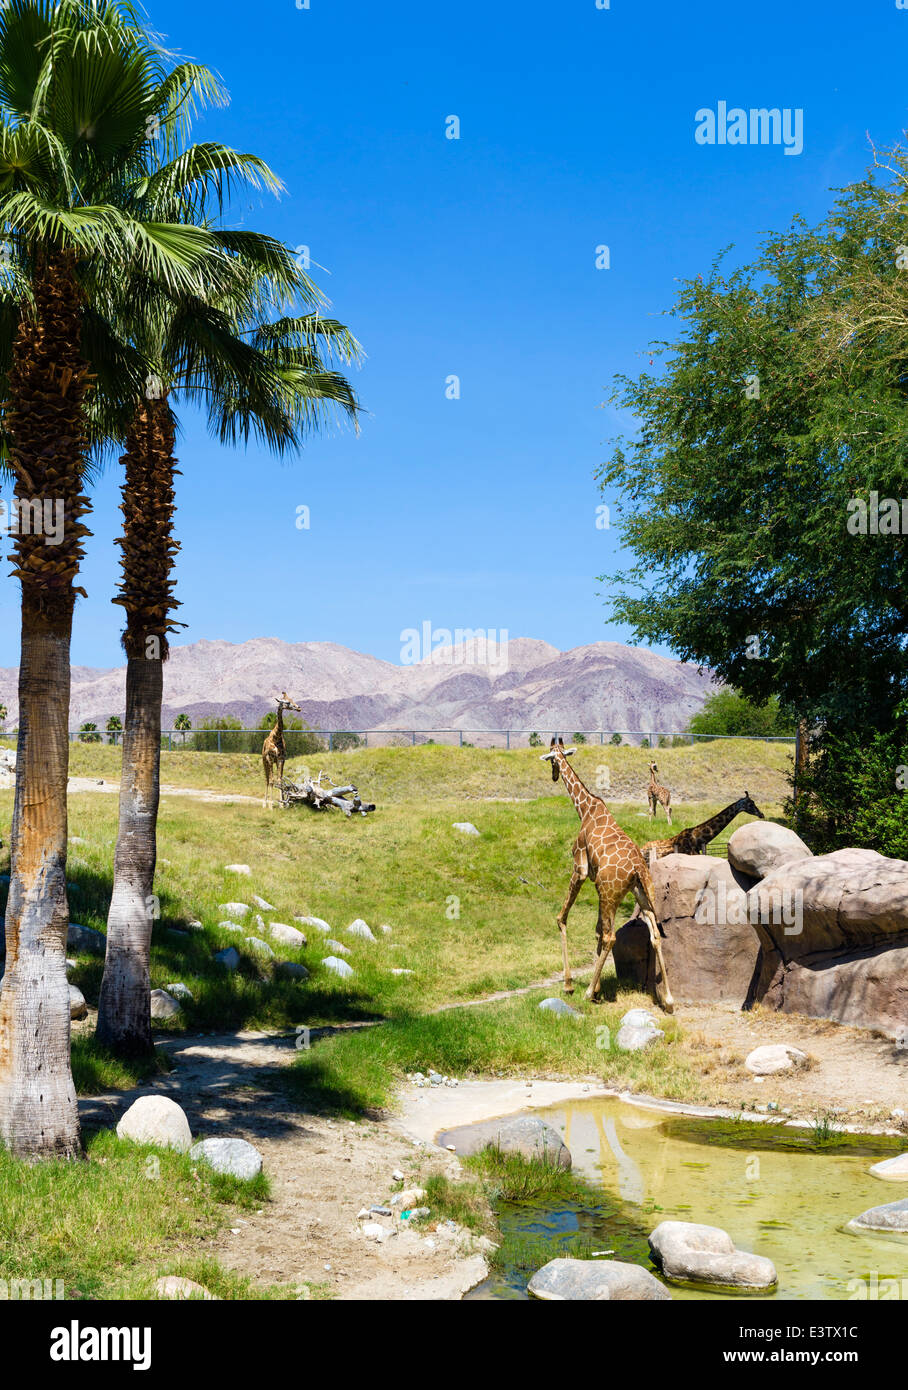 La Giraffa contenitore nel Living Desert Zoo e giardini, Palm Desert, Riverside County, California del Sud, STATI UNITI D'AMERICA Foto Stock